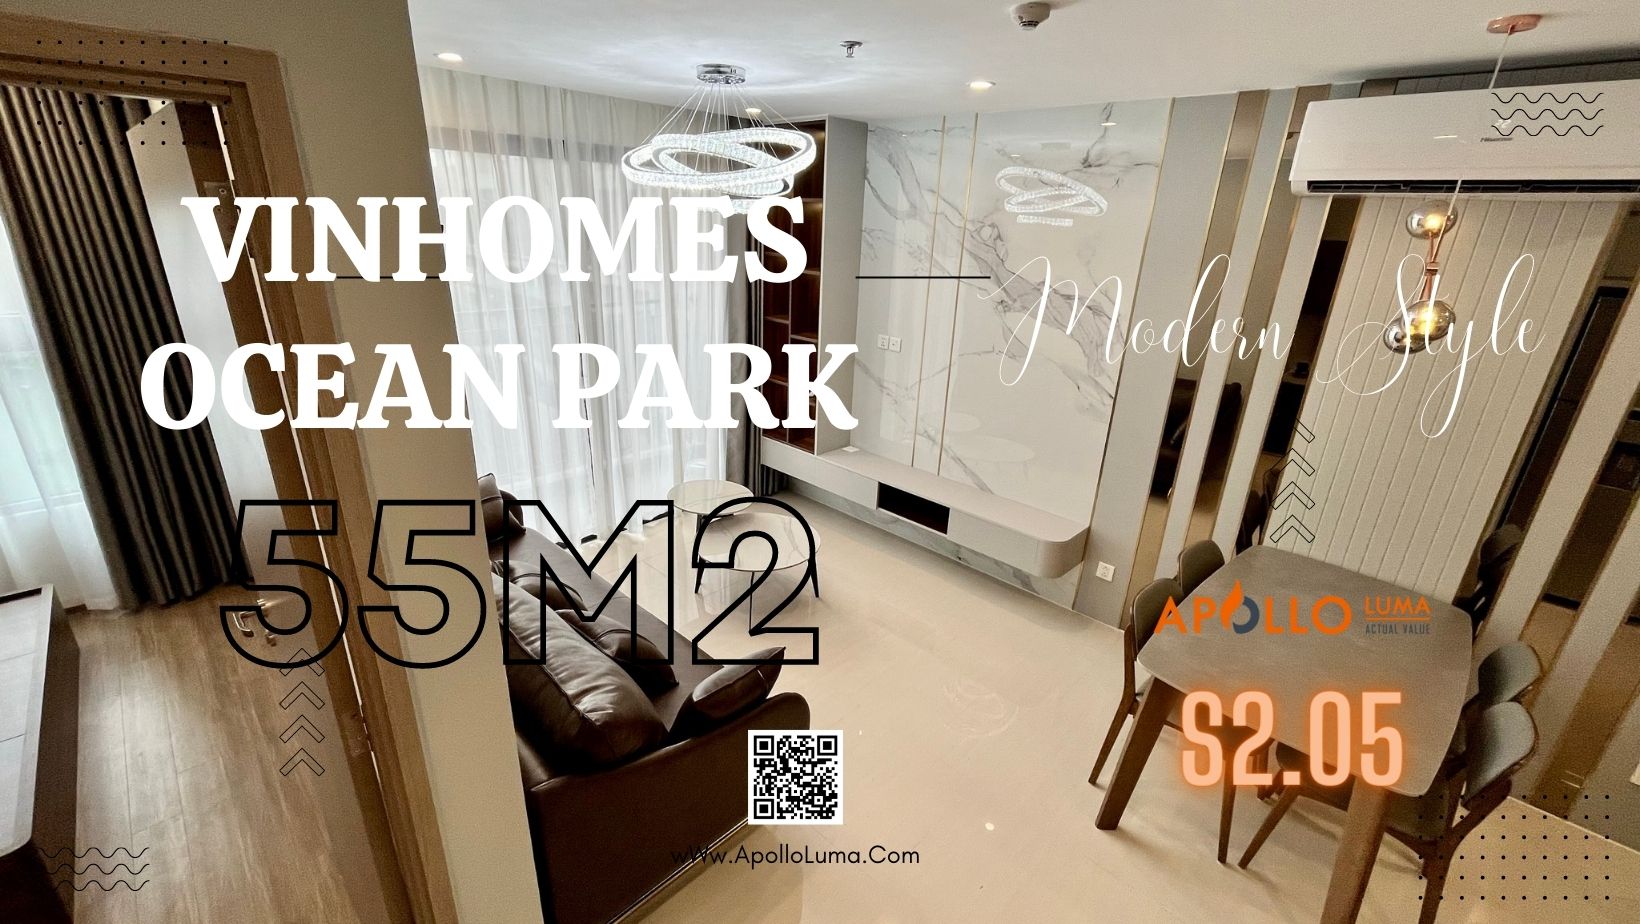 Hoàn thiện bàn giao nội thất căn hộ 55m2 tòa S2.05 Vinhomes Ocean Park